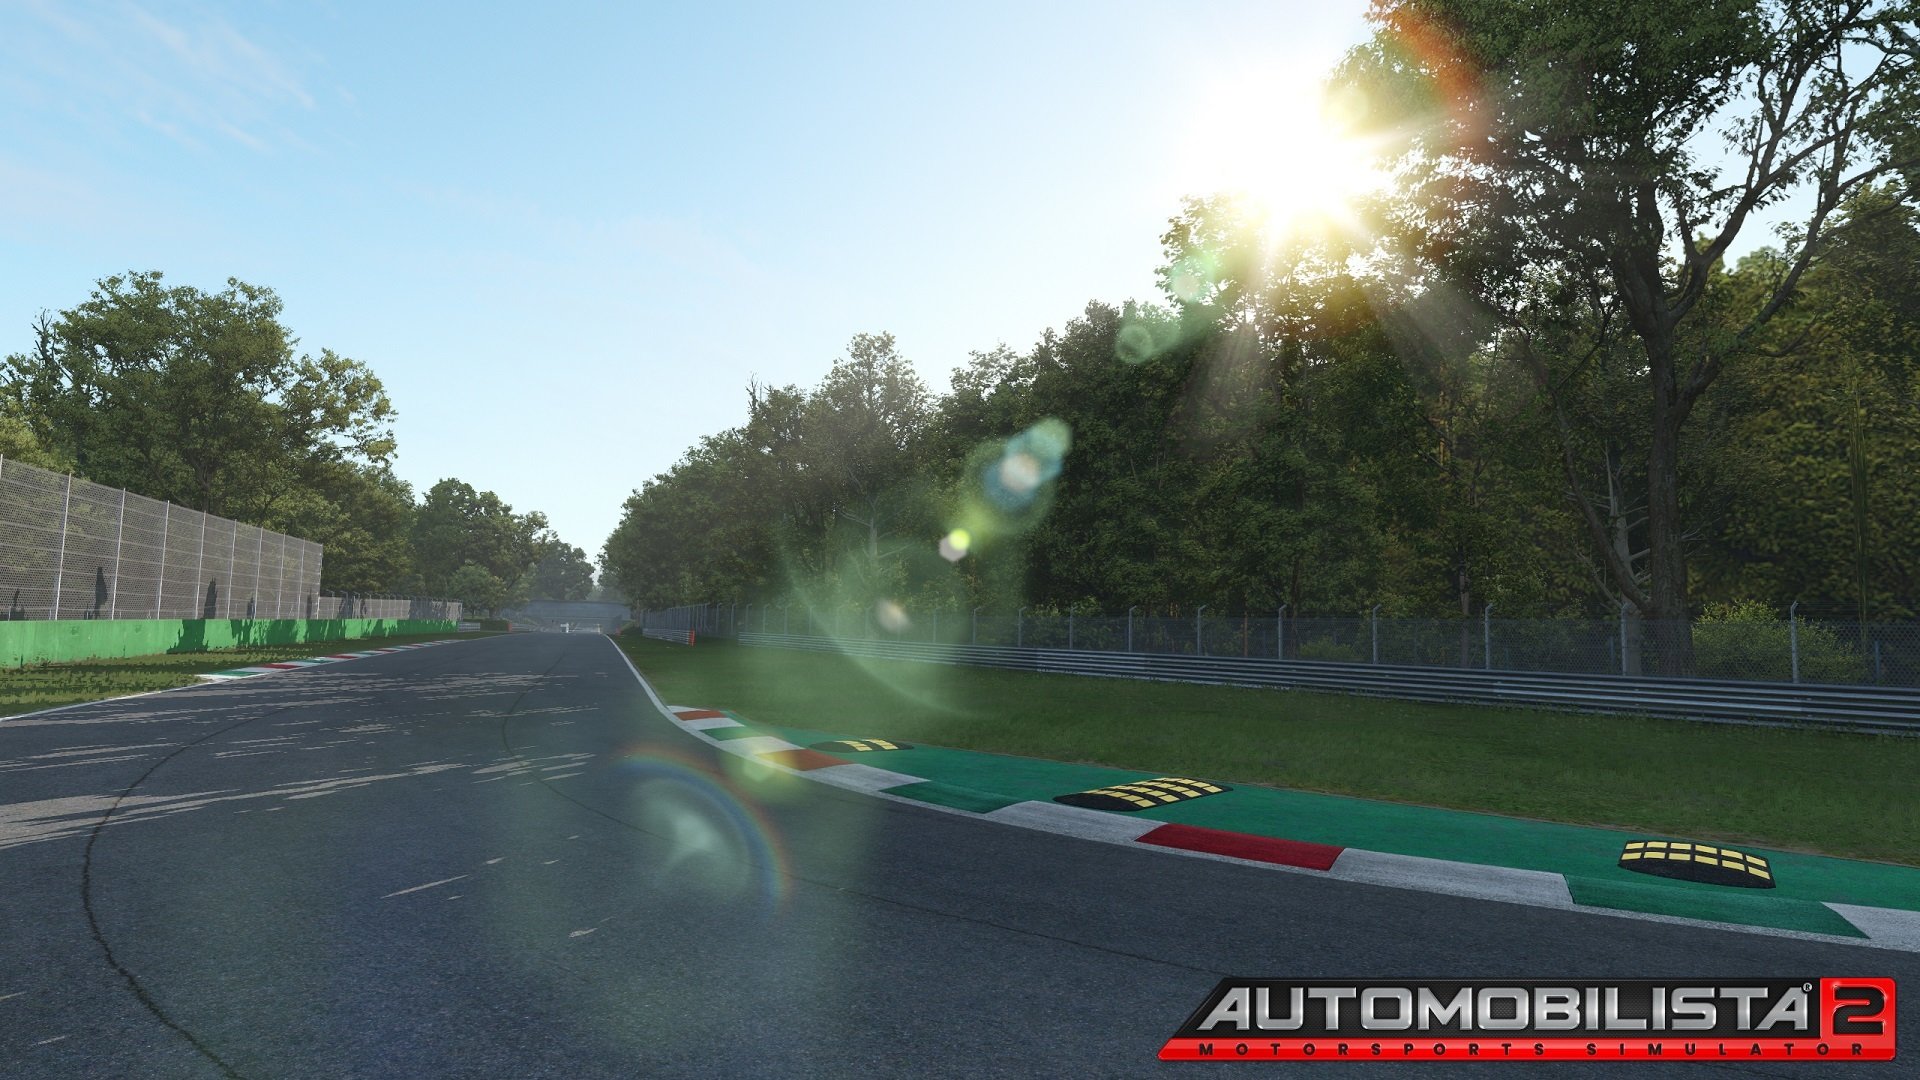 More information about "Automobilista 2: Development Update del mese di Settembre"